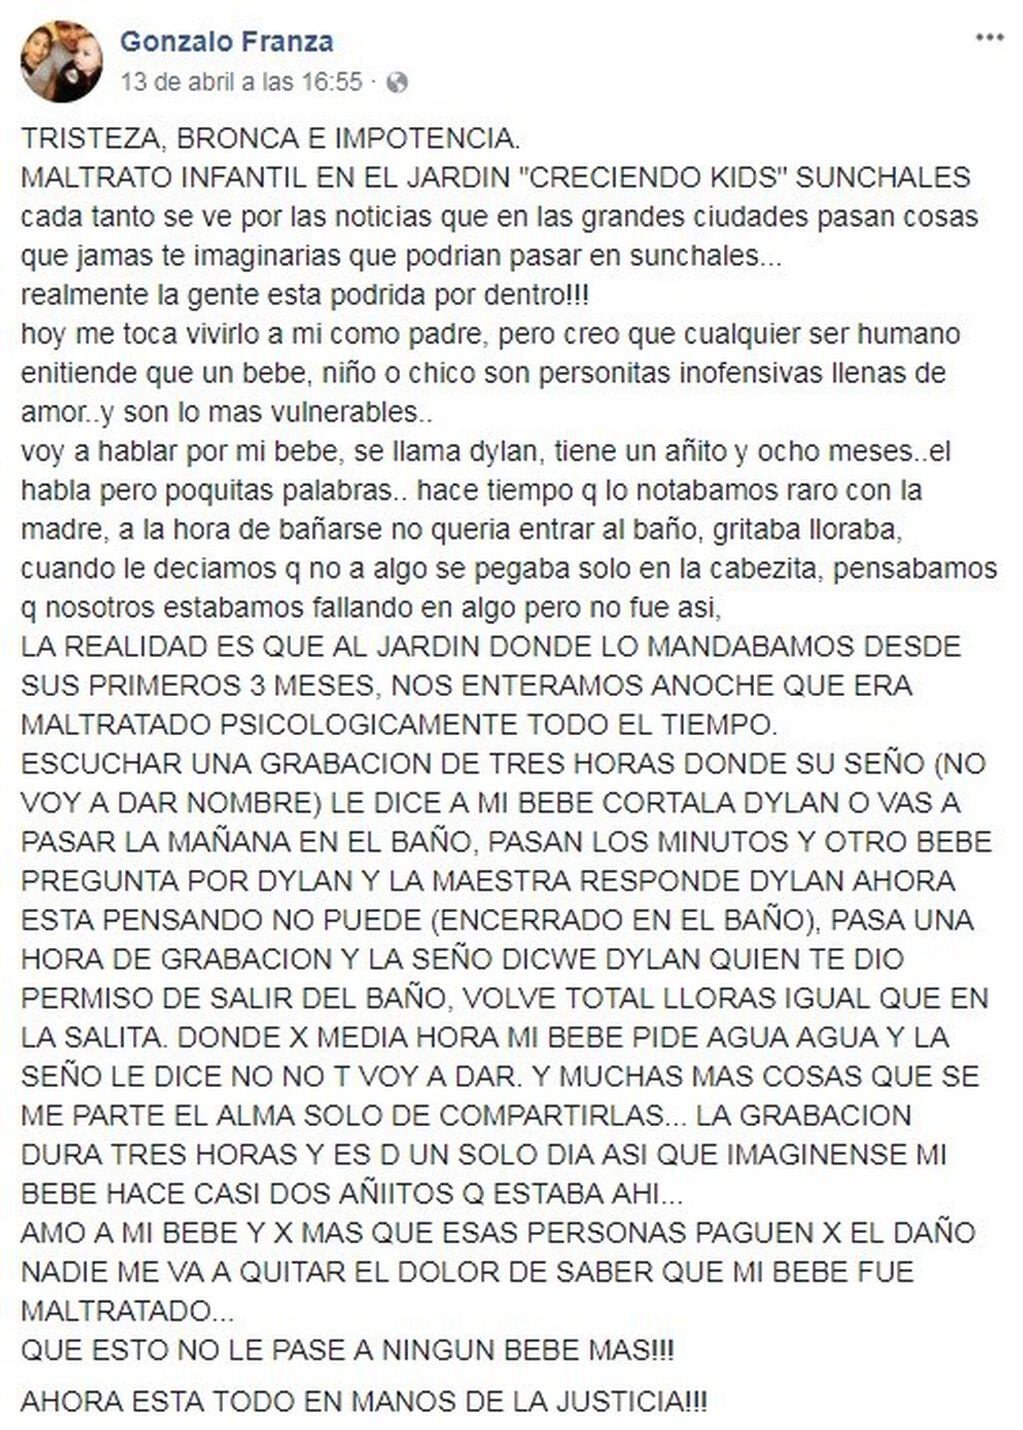 La publicación en Facebook que desató la polémica sobre el presunto maltrato en un jardín maternal de Sunchales. (Captura de pantalla)